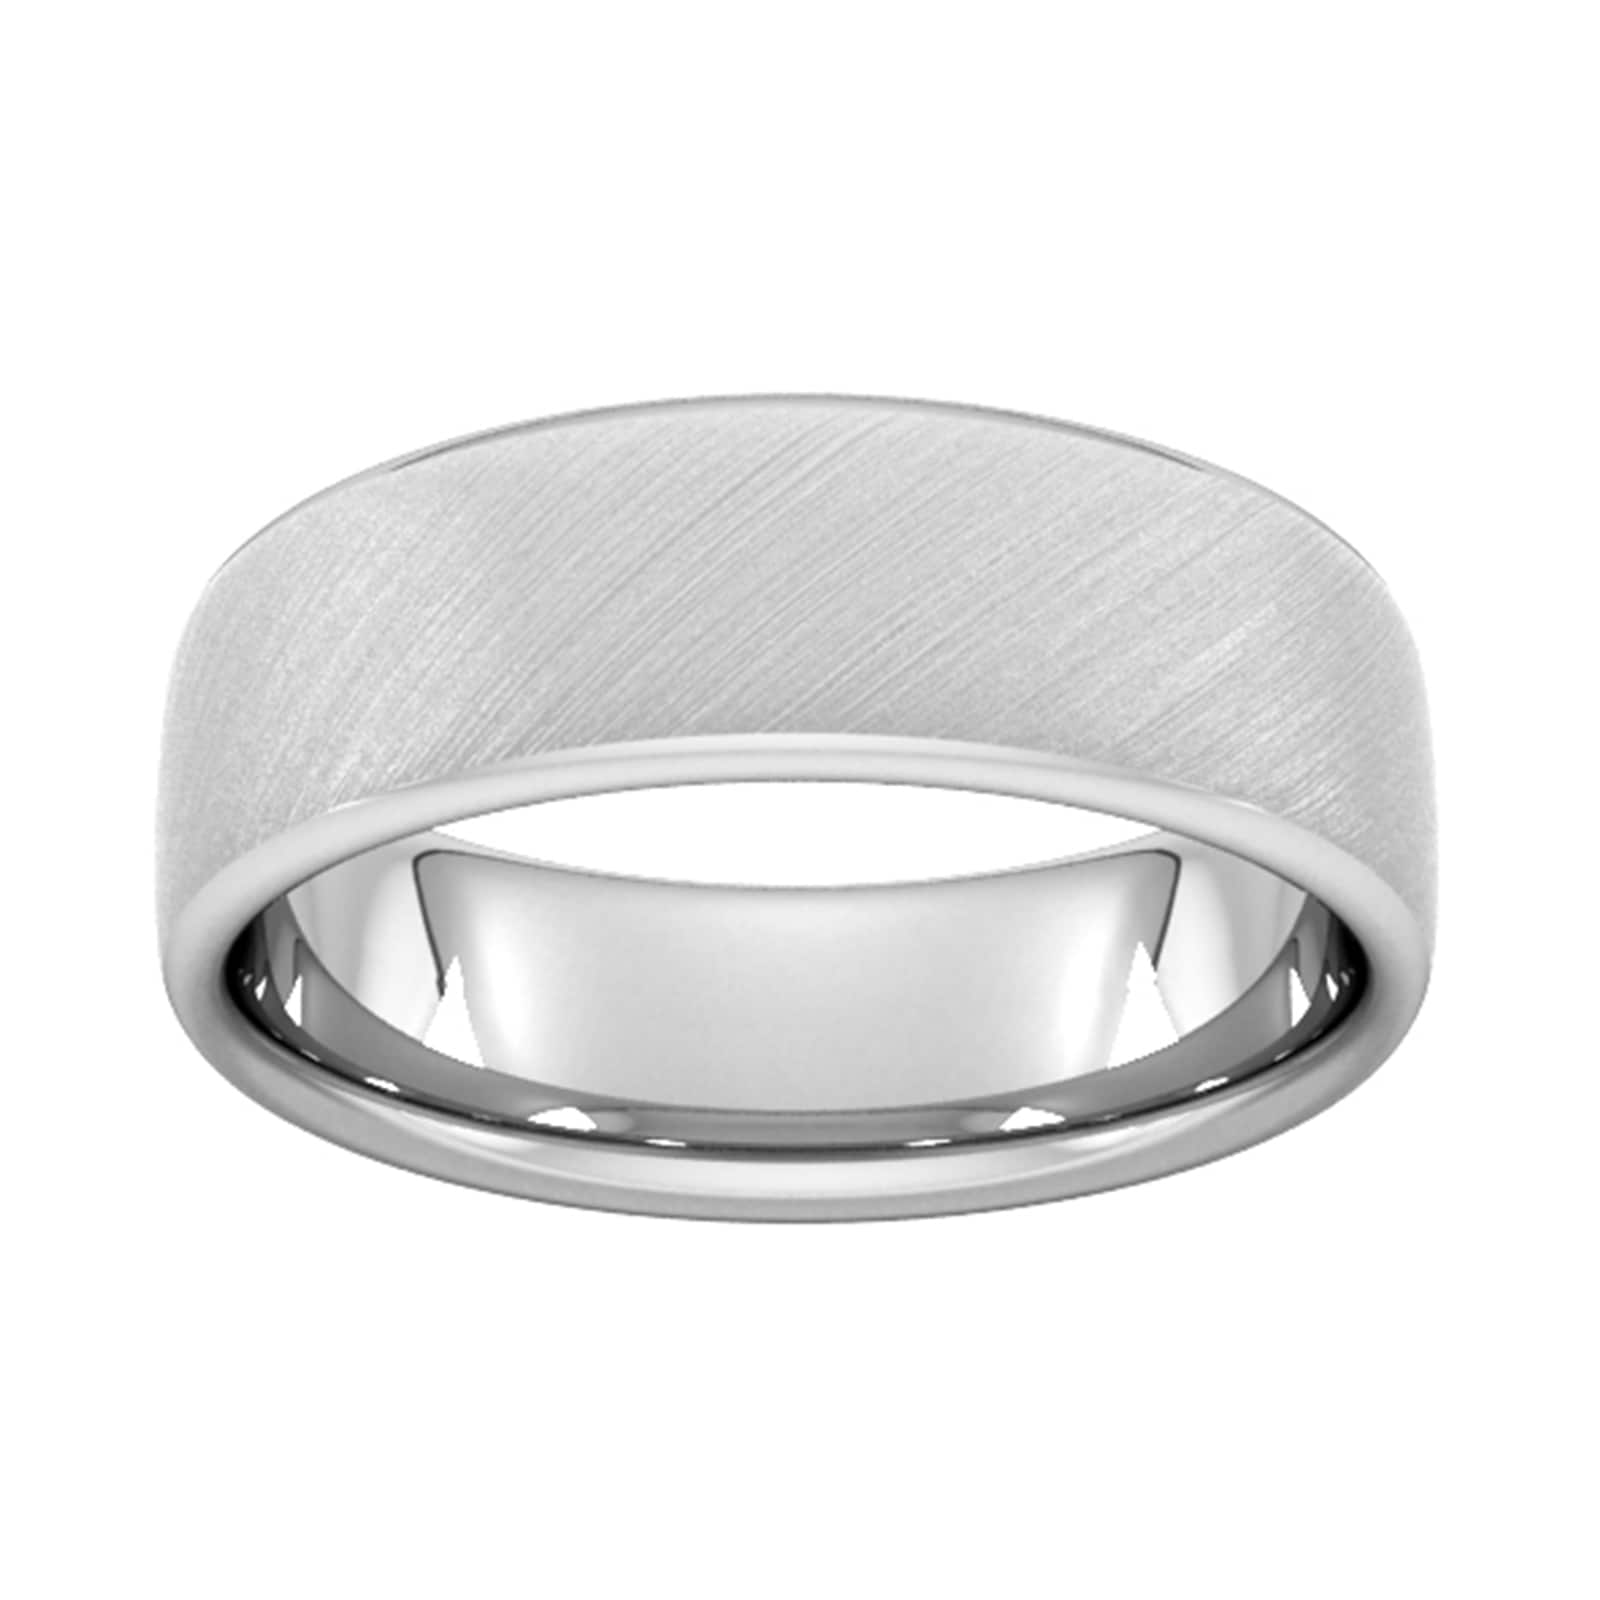 7mm Slight Court Heavy Diagonal Matt Finish Wedding Ring In 950 Palladium - Ring Size T